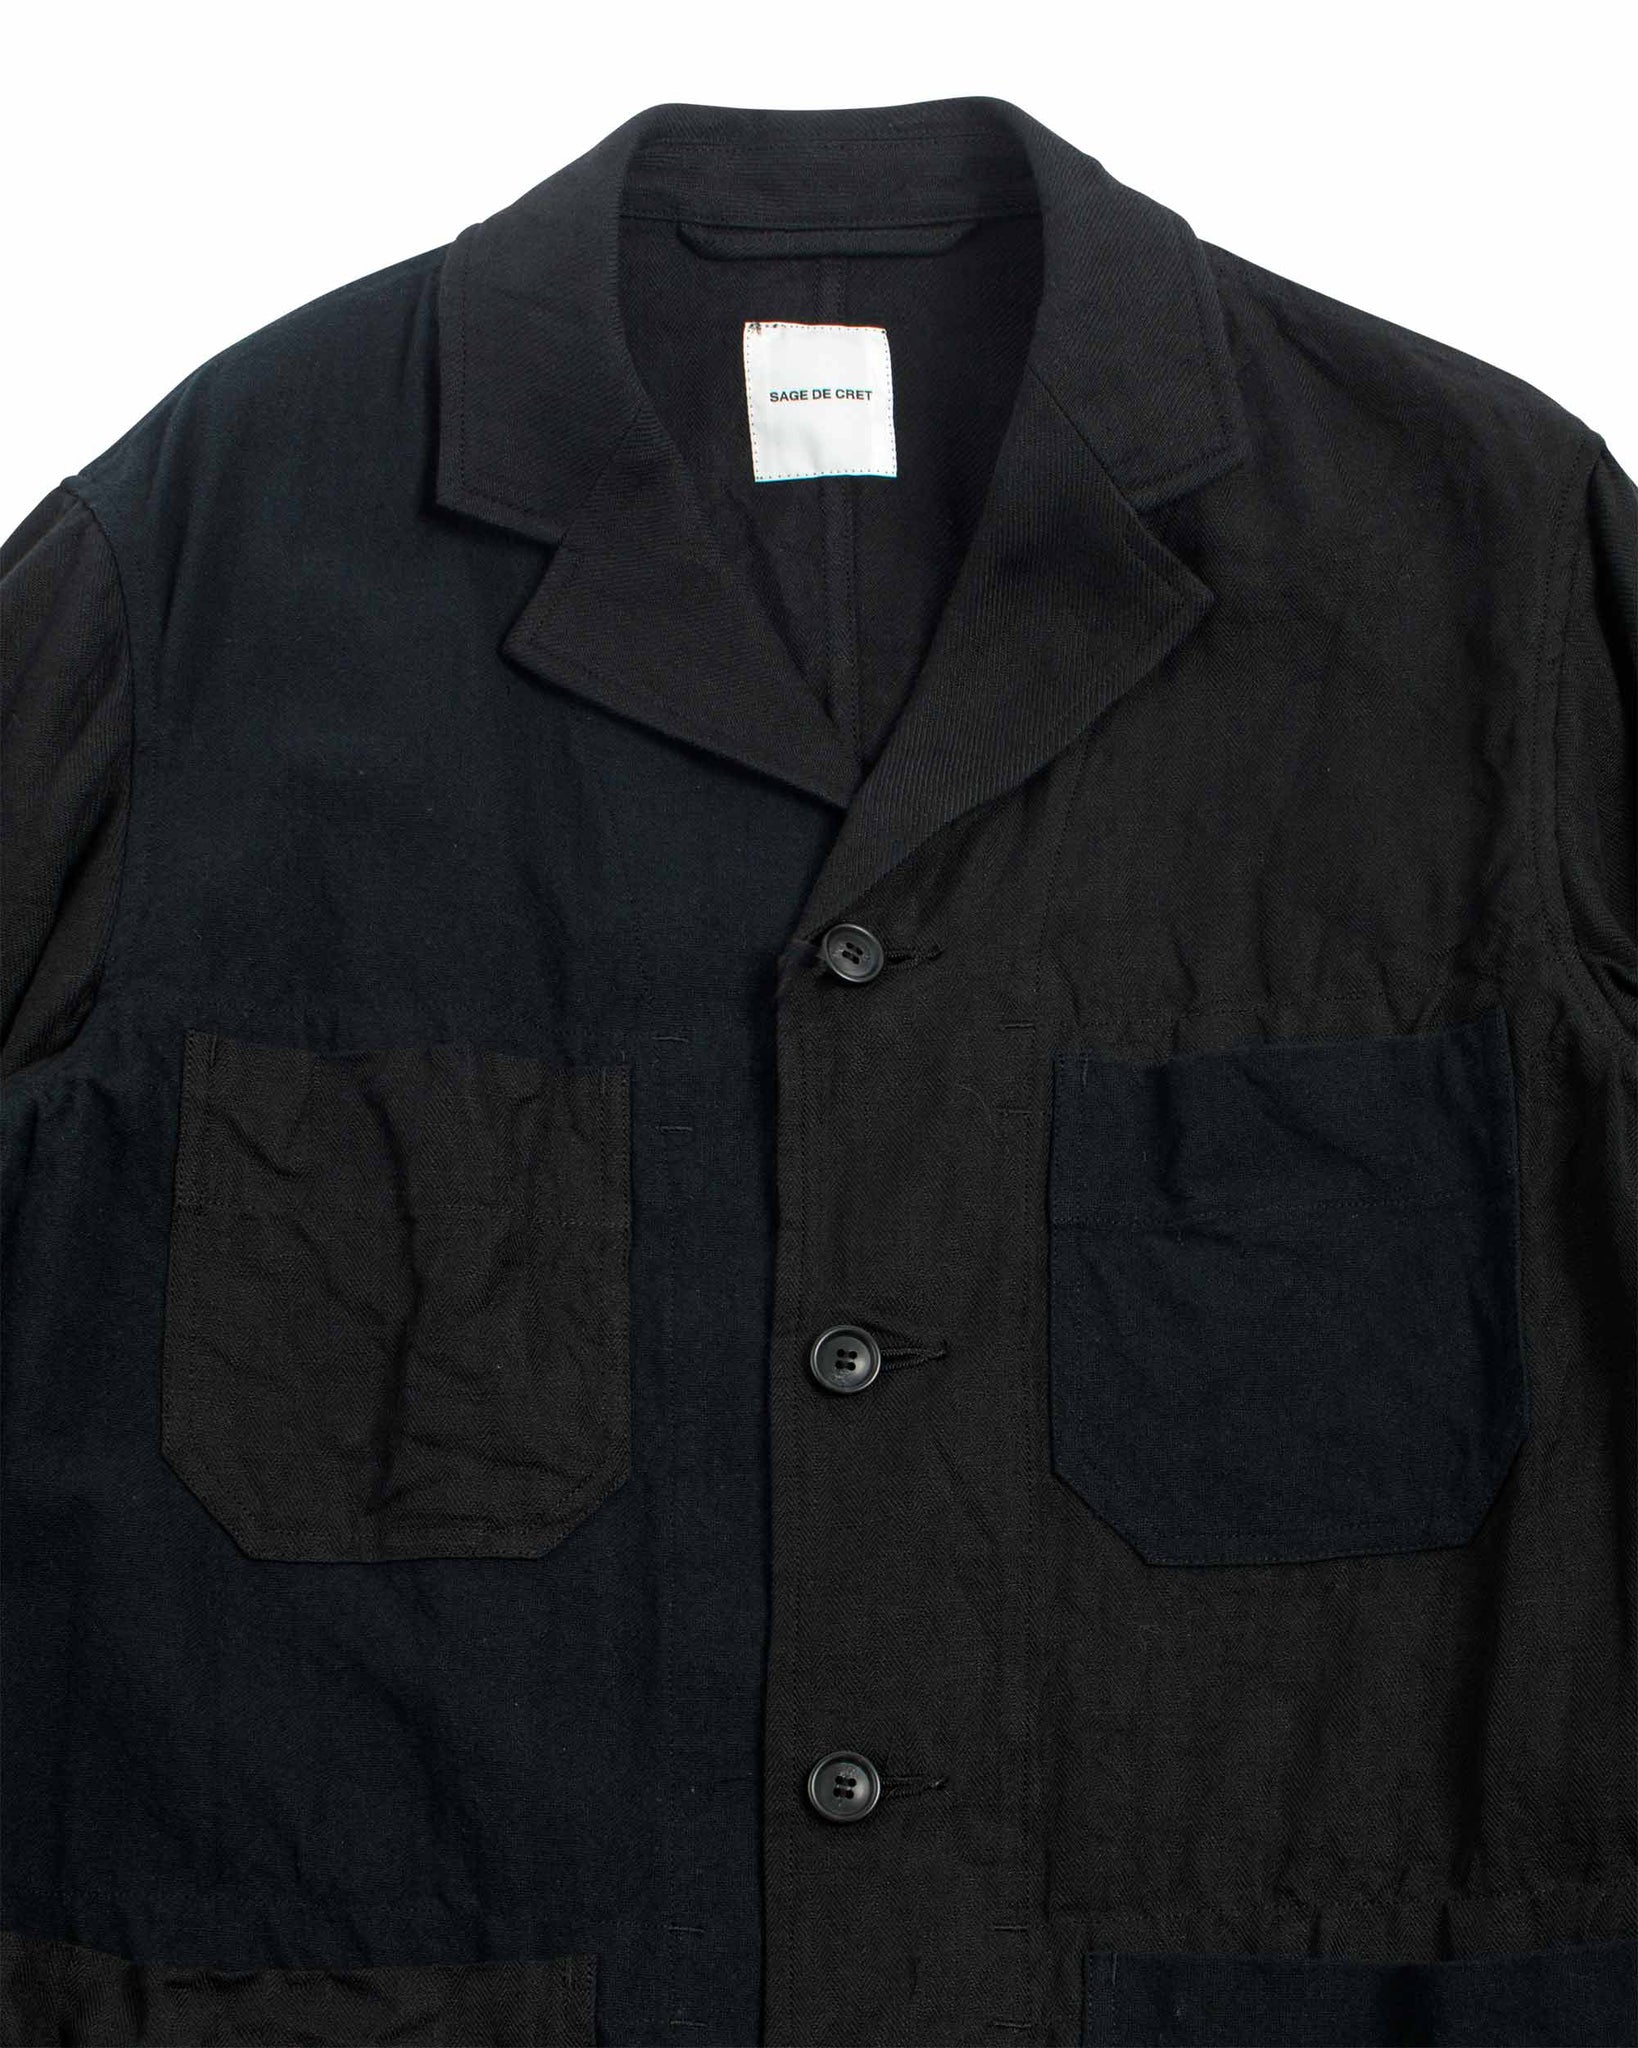 Sage de Cret Patchwork Coverall Jacket Black Linen/Cotton Multi Detail